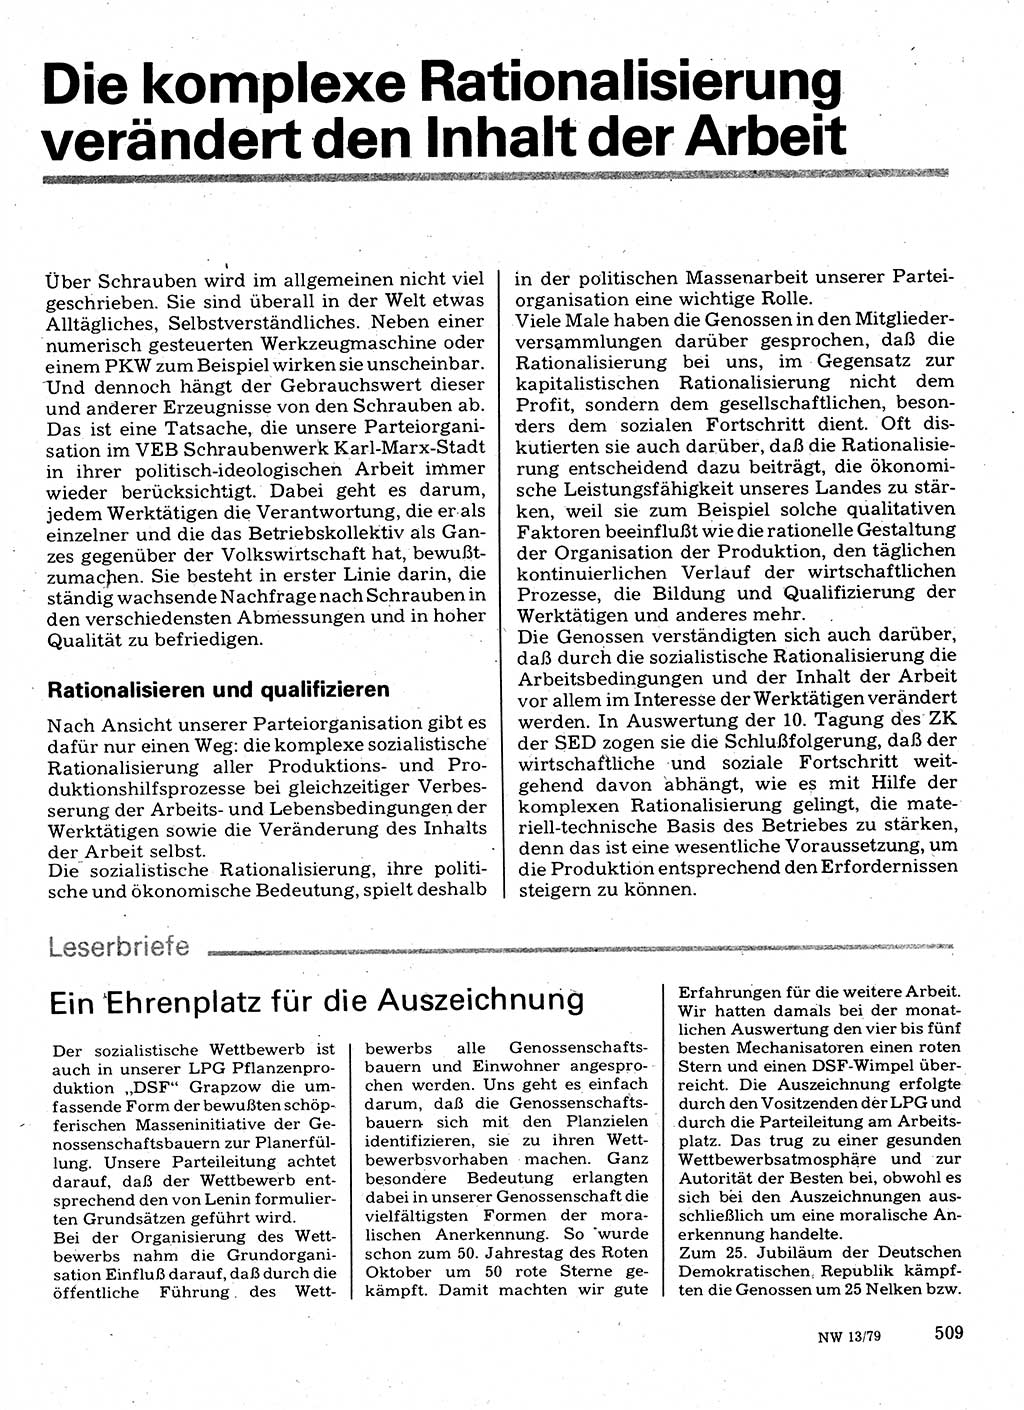 Neuer Weg (NW), Organ des Zentralkomitees (ZK) der SED (Sozialistische Einheitspartei Deutschlands) für Fragen des Parteilebens, 34. Jahrgang [Deutsche Demokratische Republik (DDR)] 1979, Seite 509 (NW ZK SED DDR 1979, S. 509)